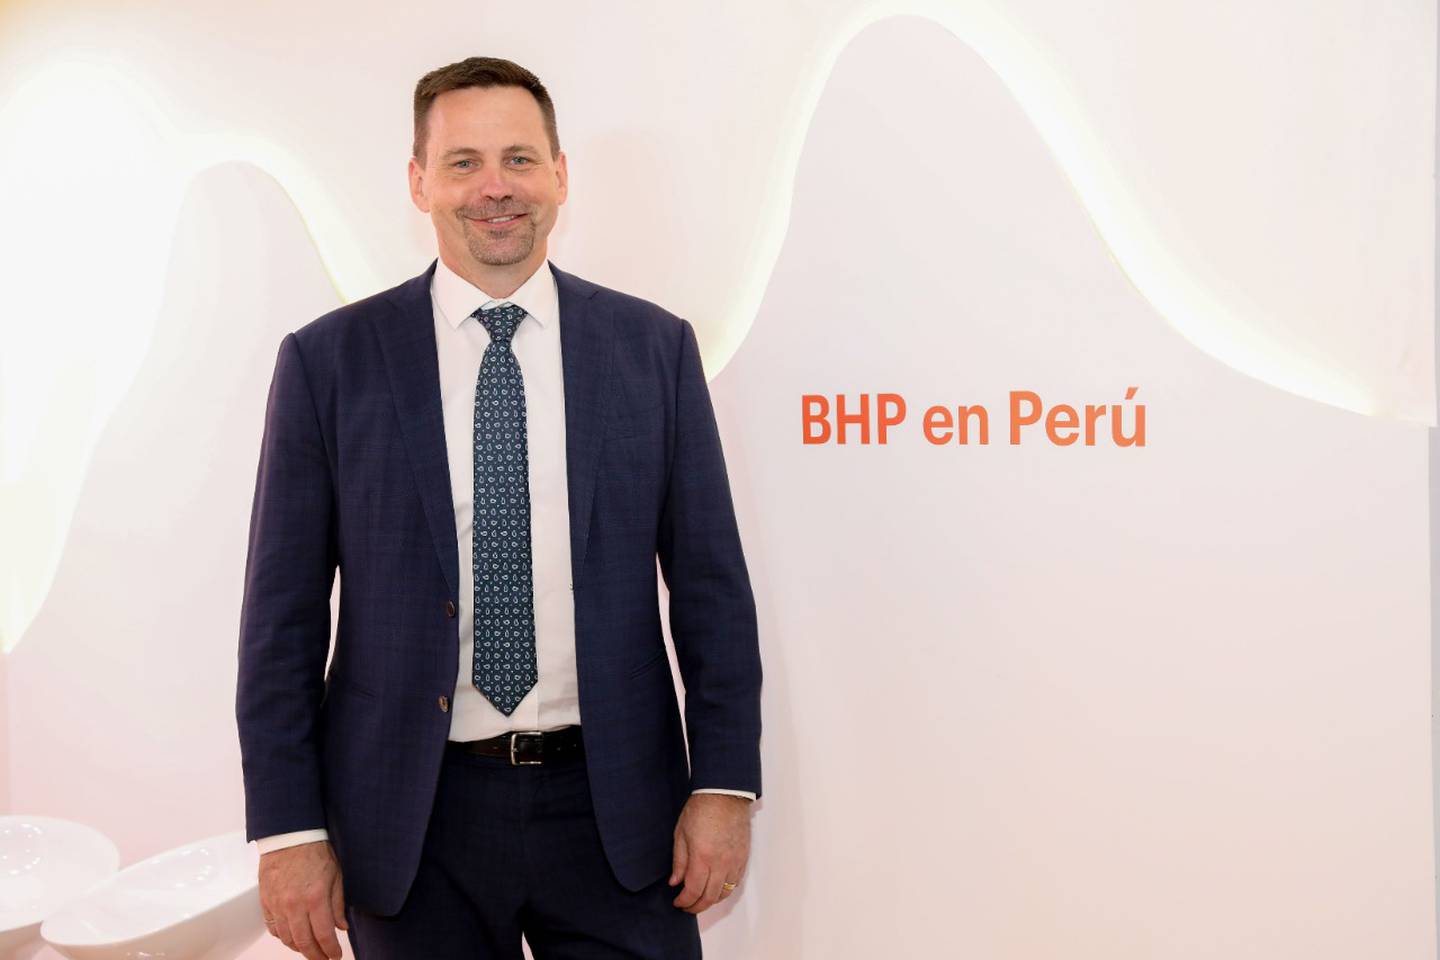 BHP anunció en Perumin 35 que en su cartera de proyectos de exploración en Perú se encuentran iniciativas en las regiones de Áncash, Huancavelica, Ayacucho, Apurímac, Cusco y Arequipa. BHP cuenta además con 33,75% de participación en Antamina.